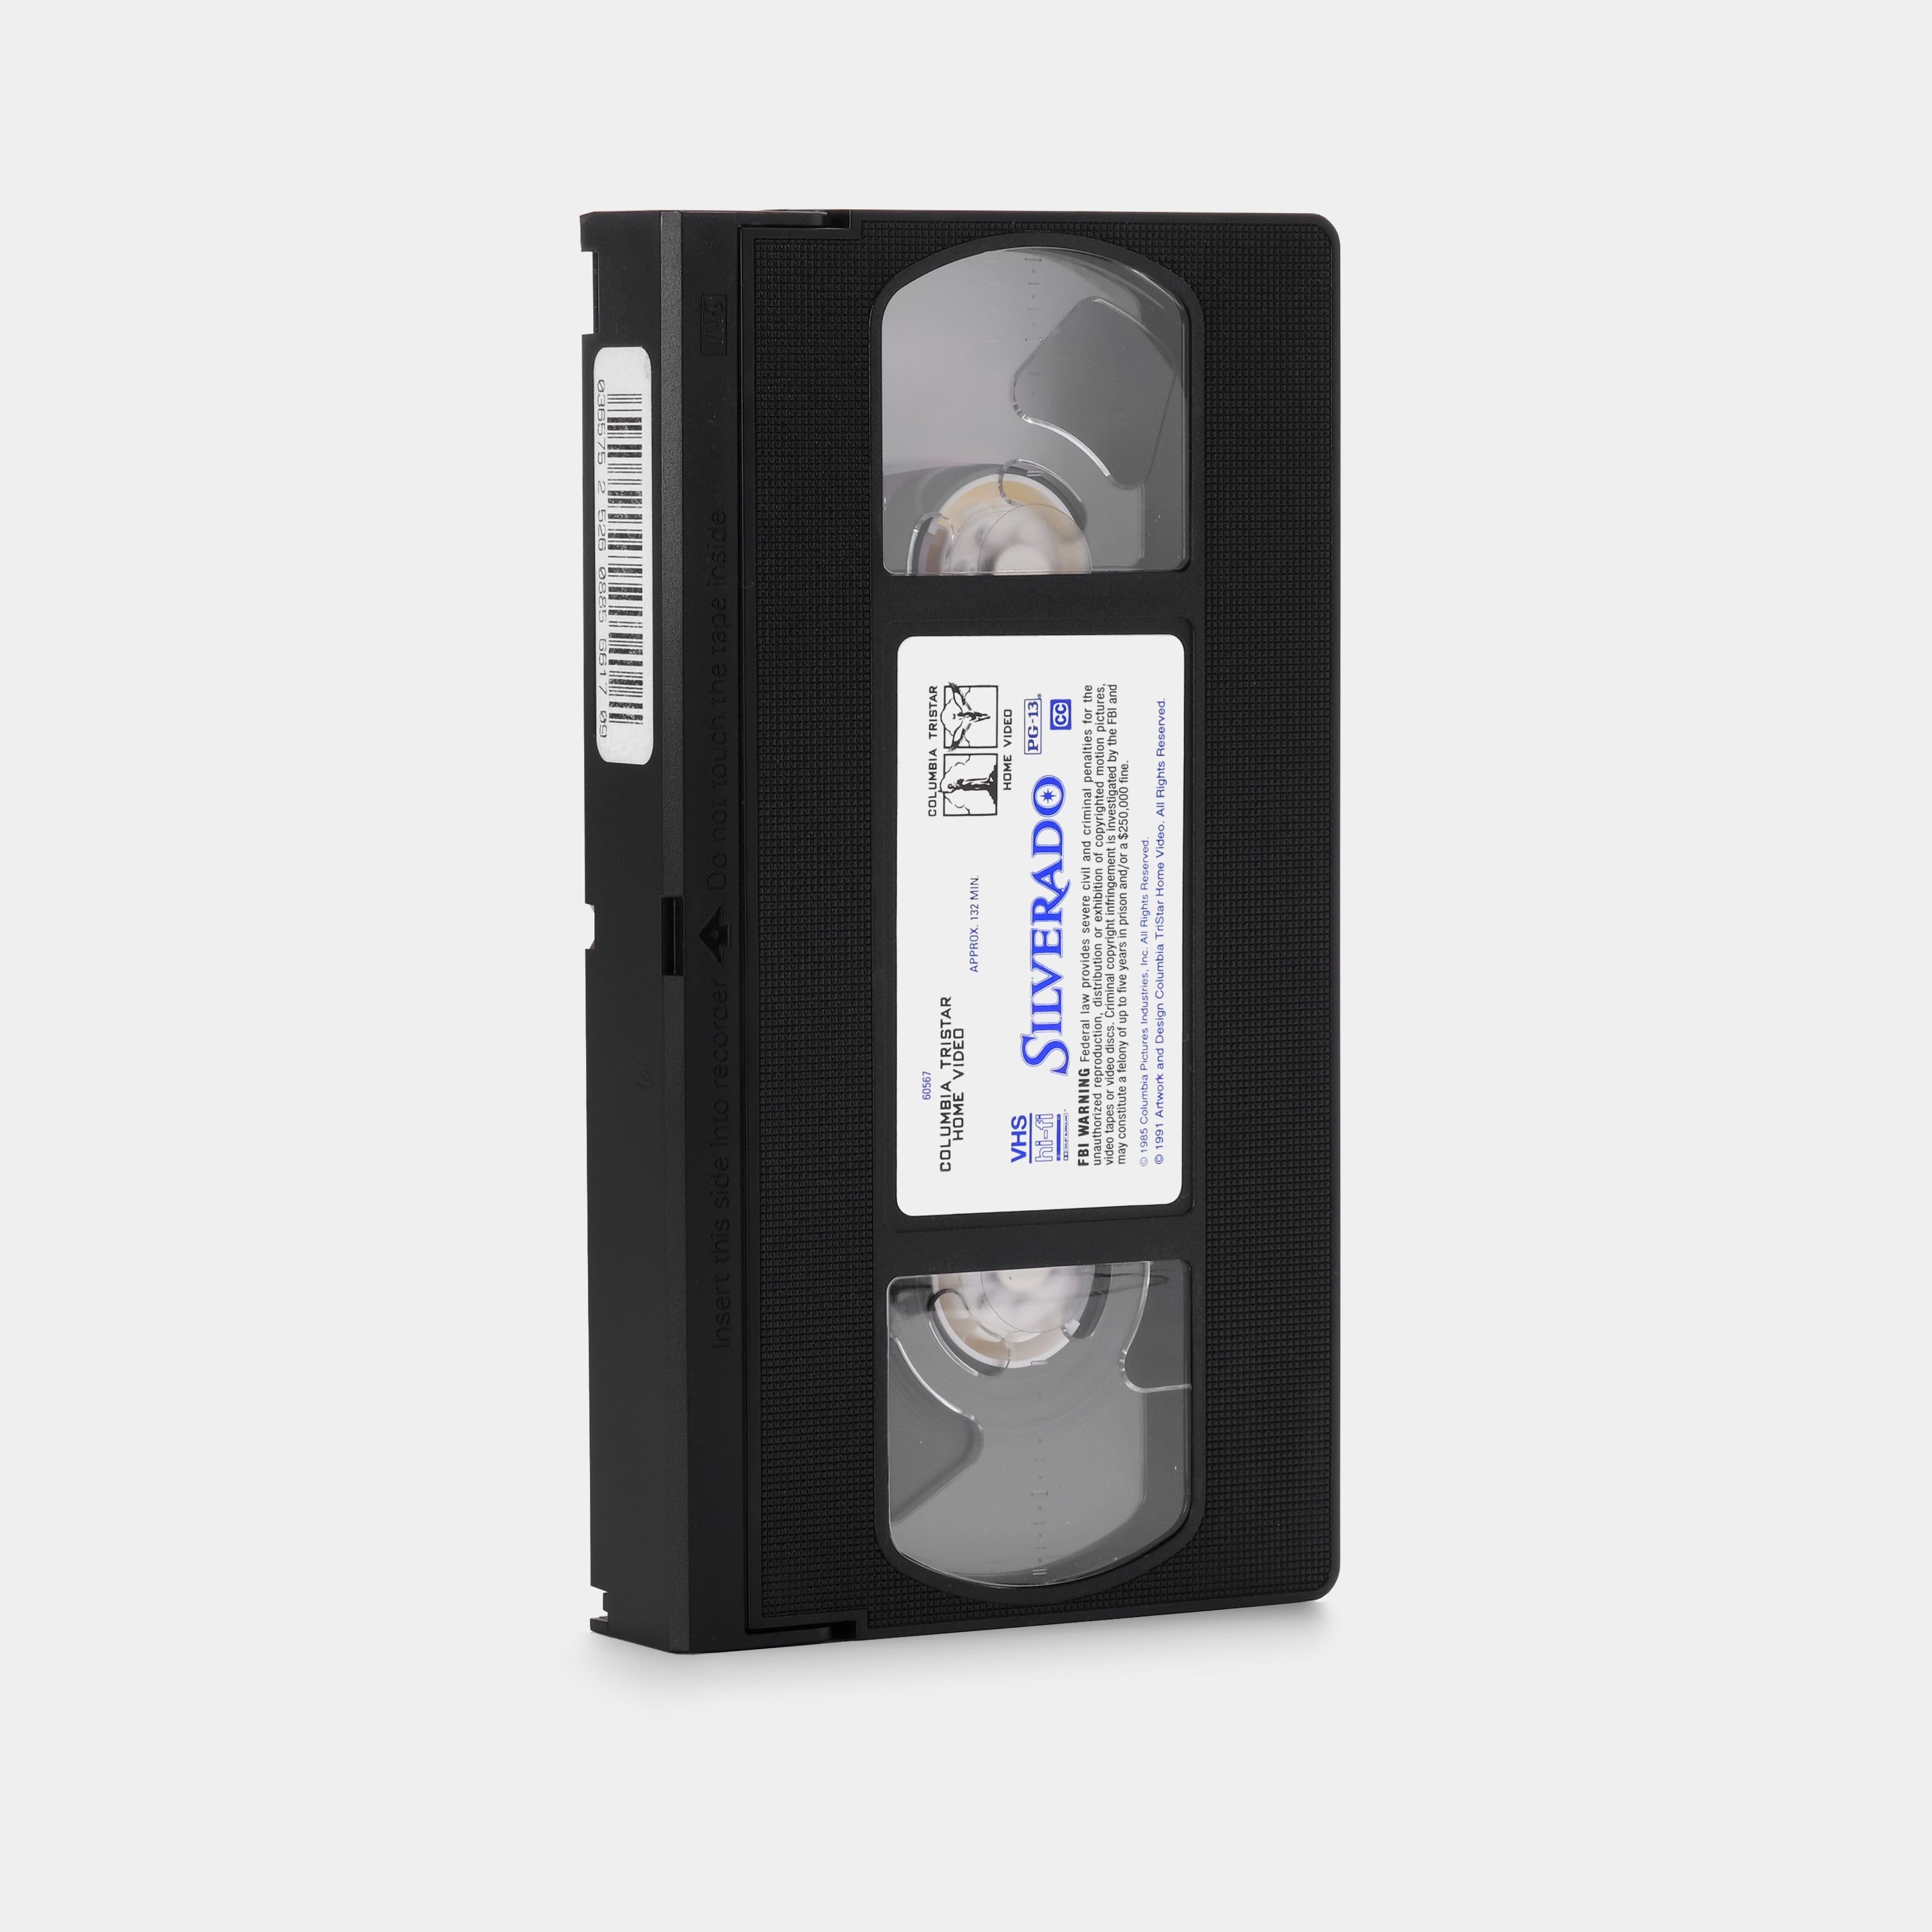 Silverado VHS Tape